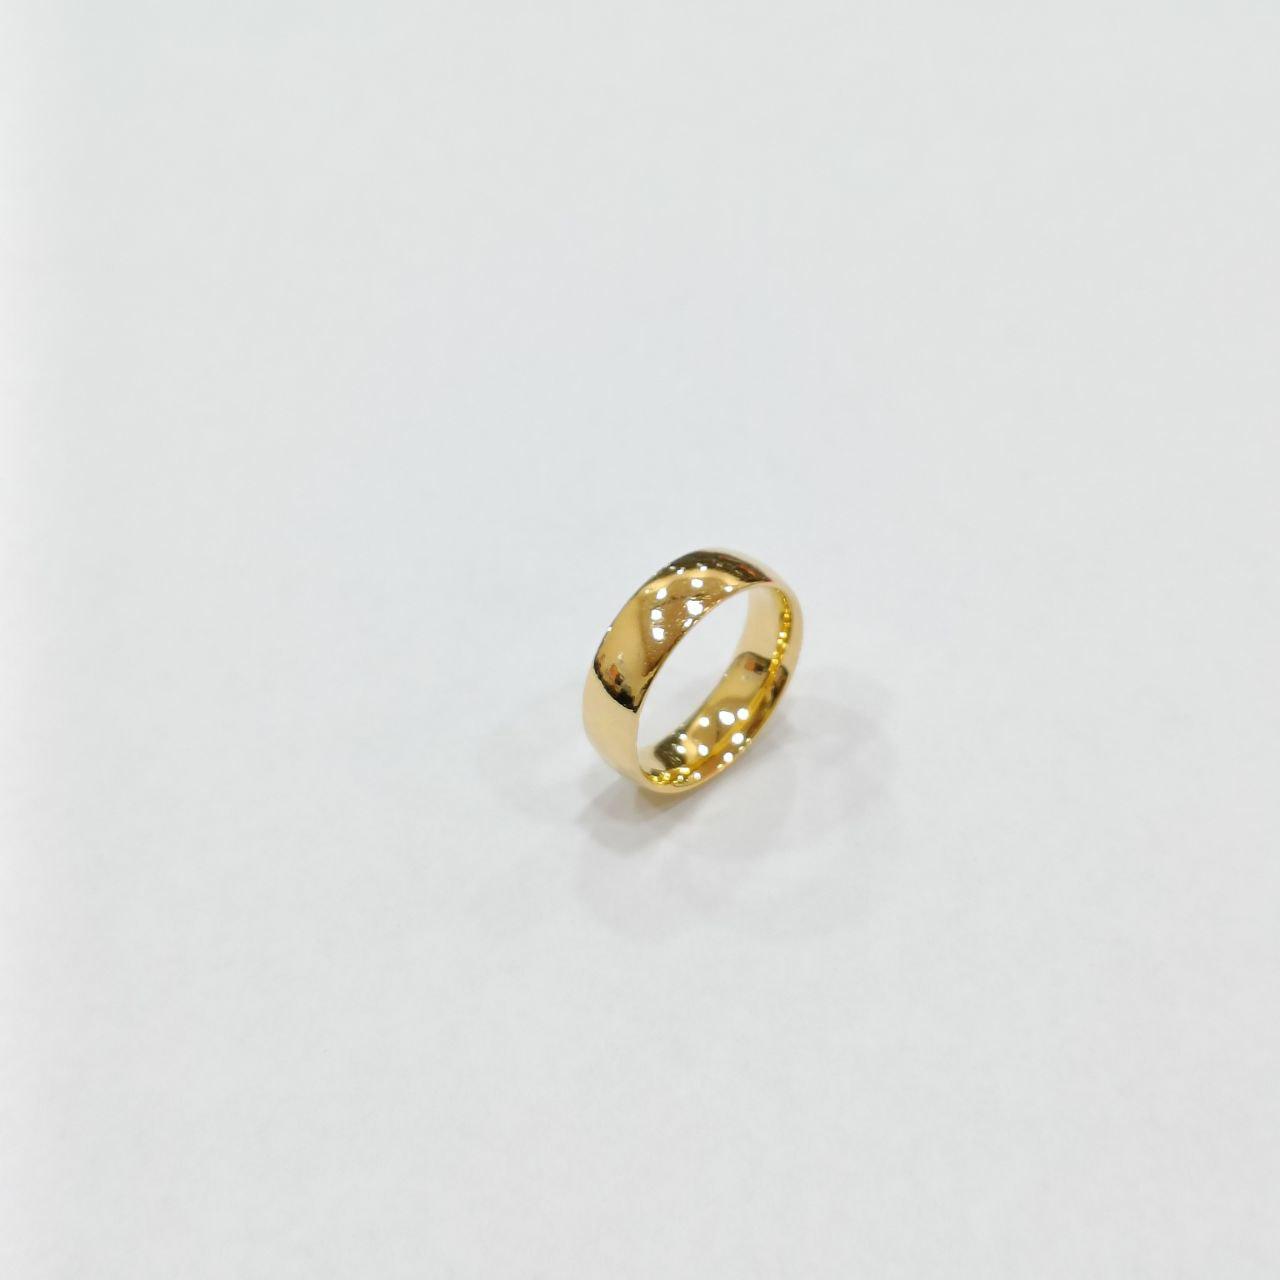 22K / 916 Gold Simple Shiny Design Ring V5-Best Gold Shop